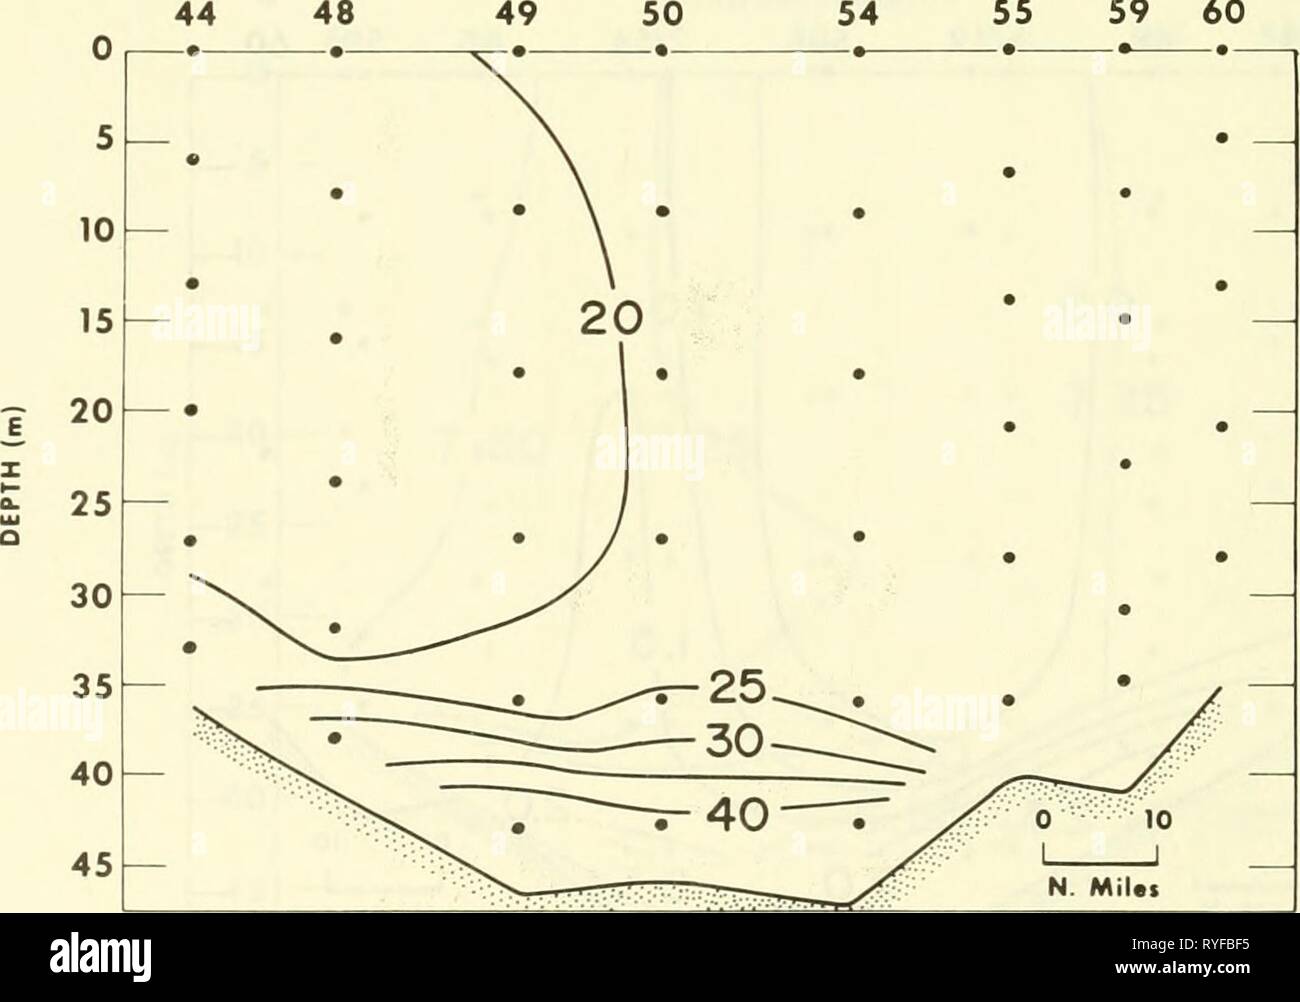 Un relevé écologique dans l'est de la mer de Chukchi : septembre-octobre 1970 ecologicalsurvey00unit Année : 1972 N. MiUs Figure 44.-profil vertical de nitrite inorganique dissous (/ig-al/1) le long de la section B-B' (l'emplacement indiqué à la Figure 2), 8-11 octobre 1970, au cours de WEBSEC-70. B 44 NUMÉRO DE STATION 4950 -•- B' 55 59 60 Figure 45.-profil vertical de silicate inorganique dissous (/ig-at/1) le long de la section B-B' (l'emplacement indiqué à la Figure 2), 8-11 octobre 1970, au cours de WEBSEC-70. 52 Banque D'Images